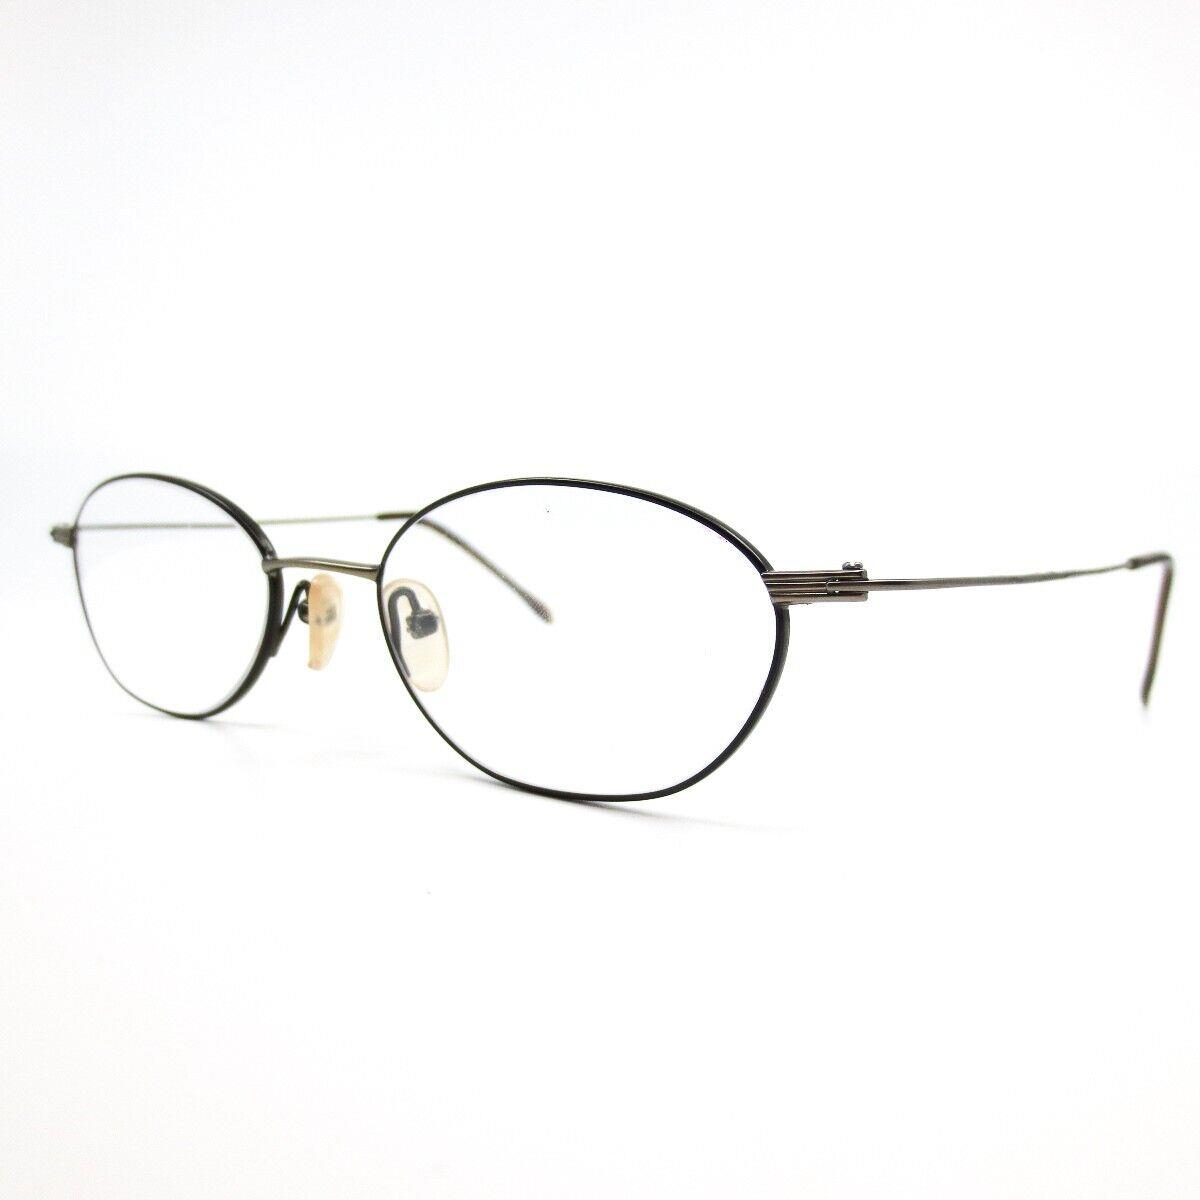 Pierre Cardin PC-405-2 Eyeglasses Round Gray Full Rim Frame 52-19-145